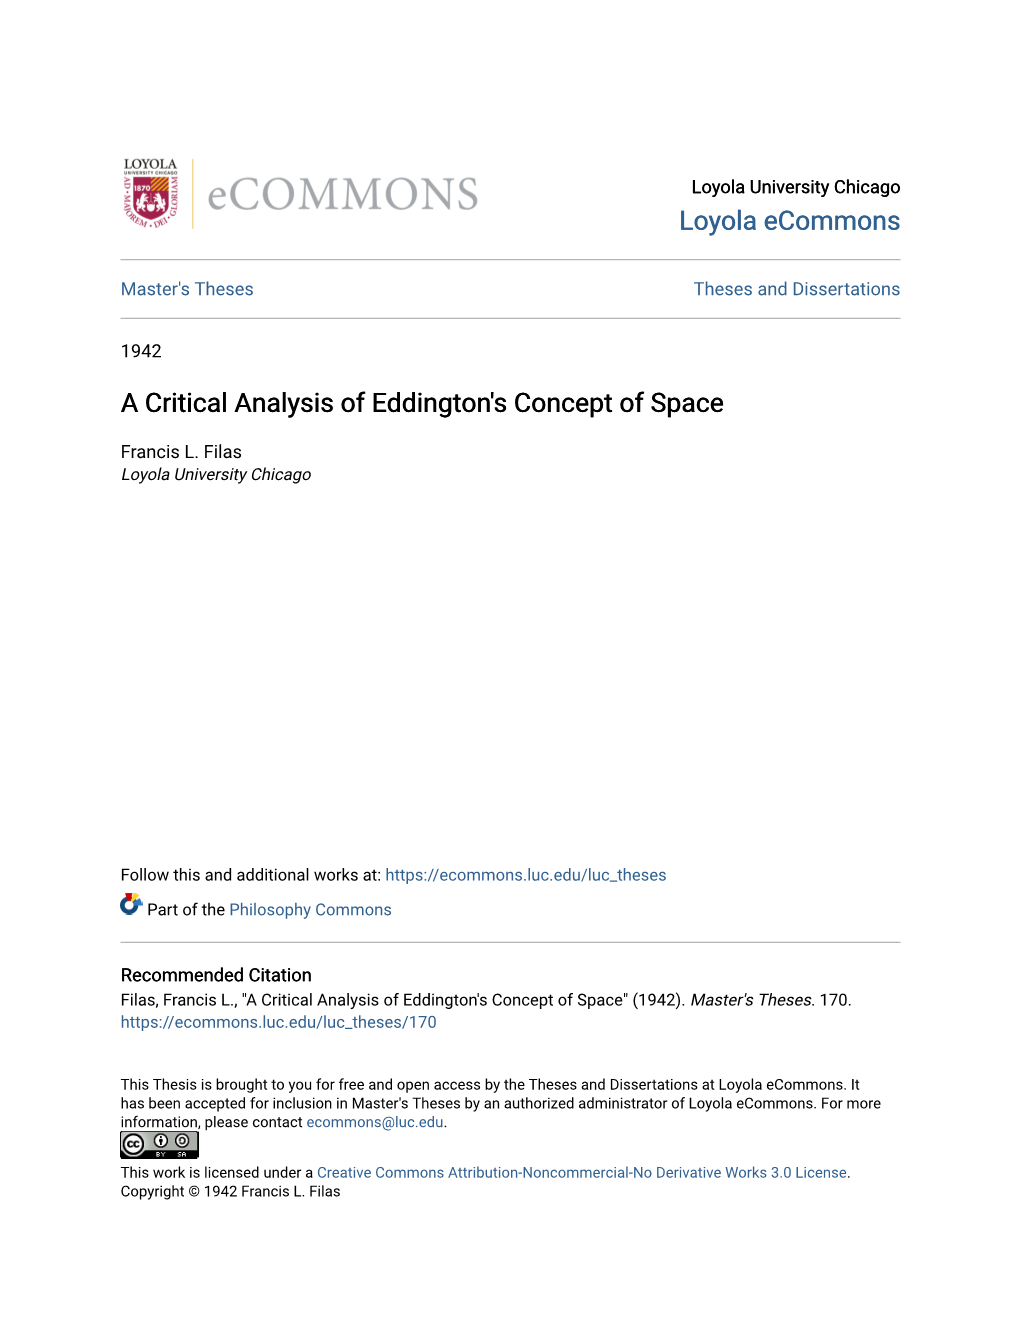 A Critical Analysis of Eddington's Concept of Space